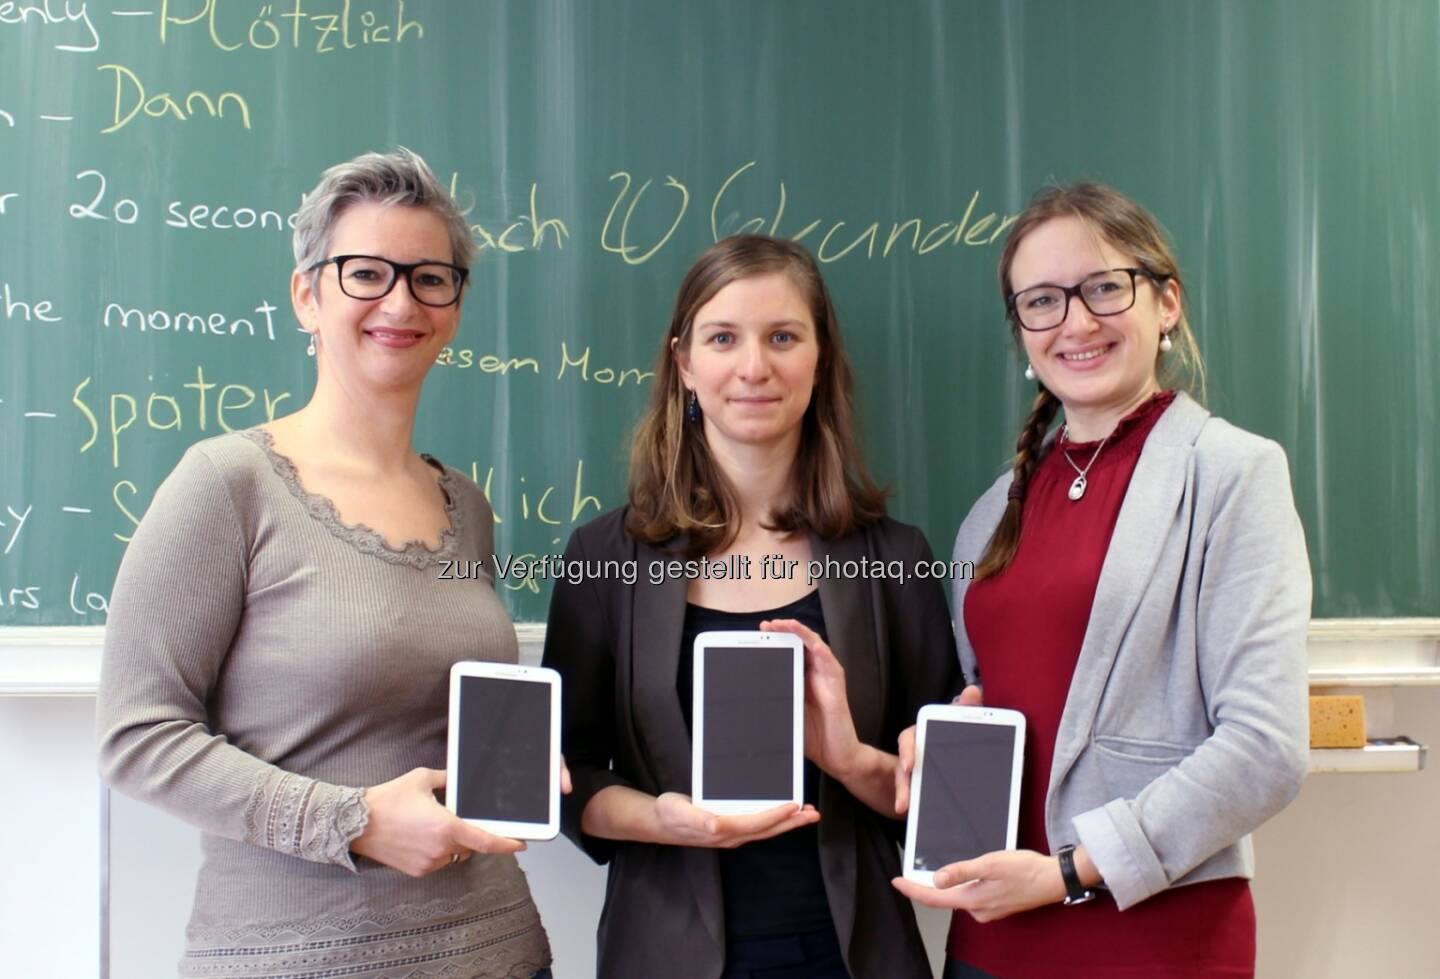 Übergabe der Samsung-Tablets an Fellows von Teach For Austria - Teach For Austria gemeinnützige GmbH: Digitale Bildung forcieren: 30 Samsung-Tablets für Teach For Austria (Fotocredit: Teach For Austria)